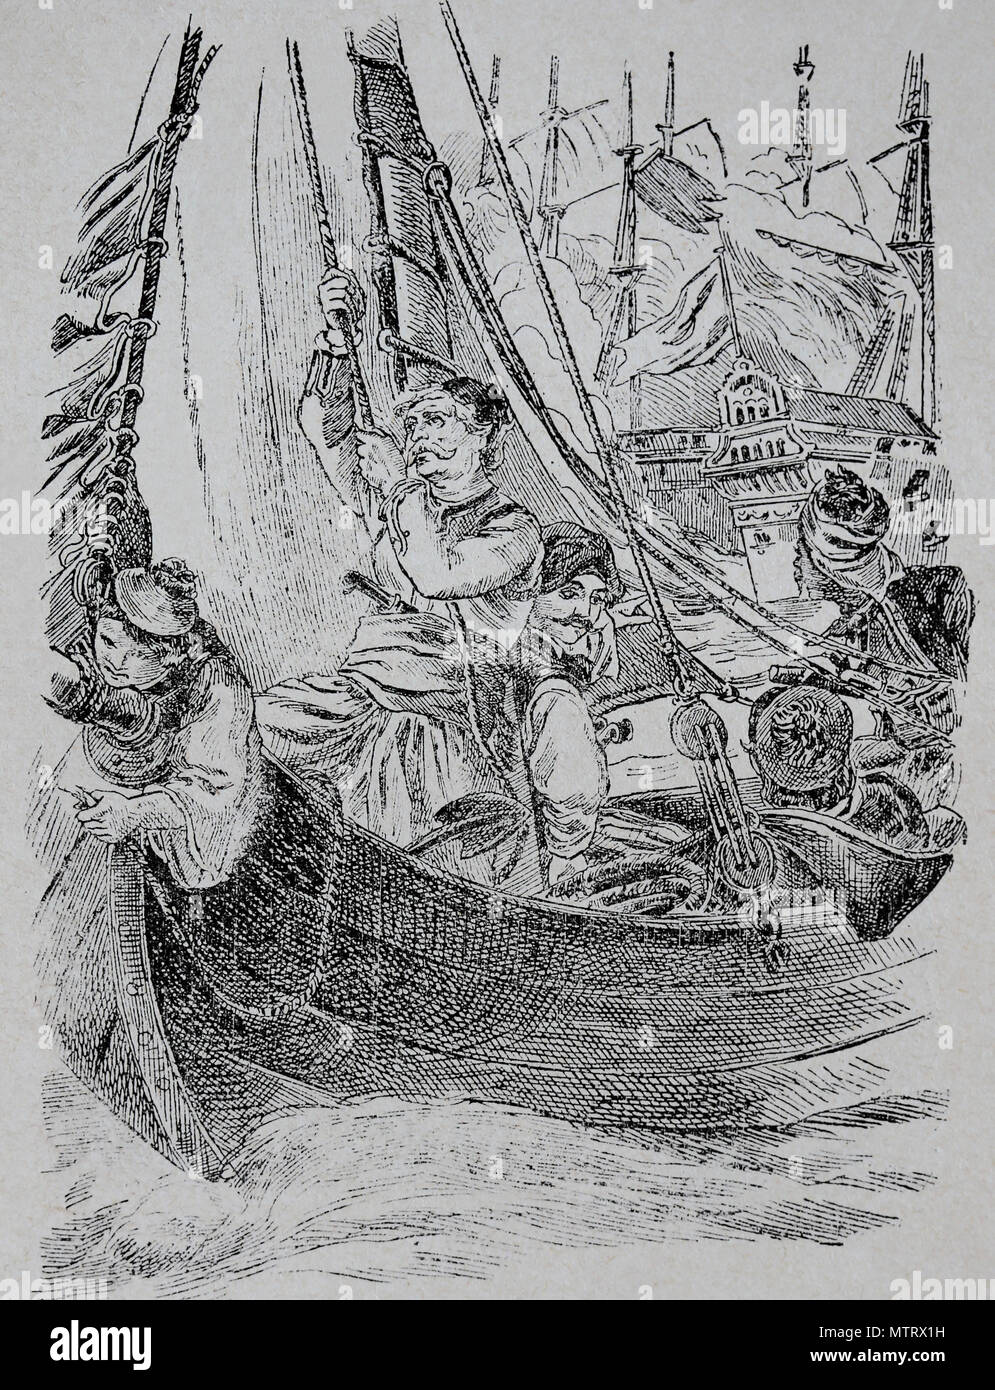 La destrucción de la emblemática otomano en Chios por el almirante C. Kanaris(1795-1877), 1822. Guerra de Independencia griega . Foto de stock